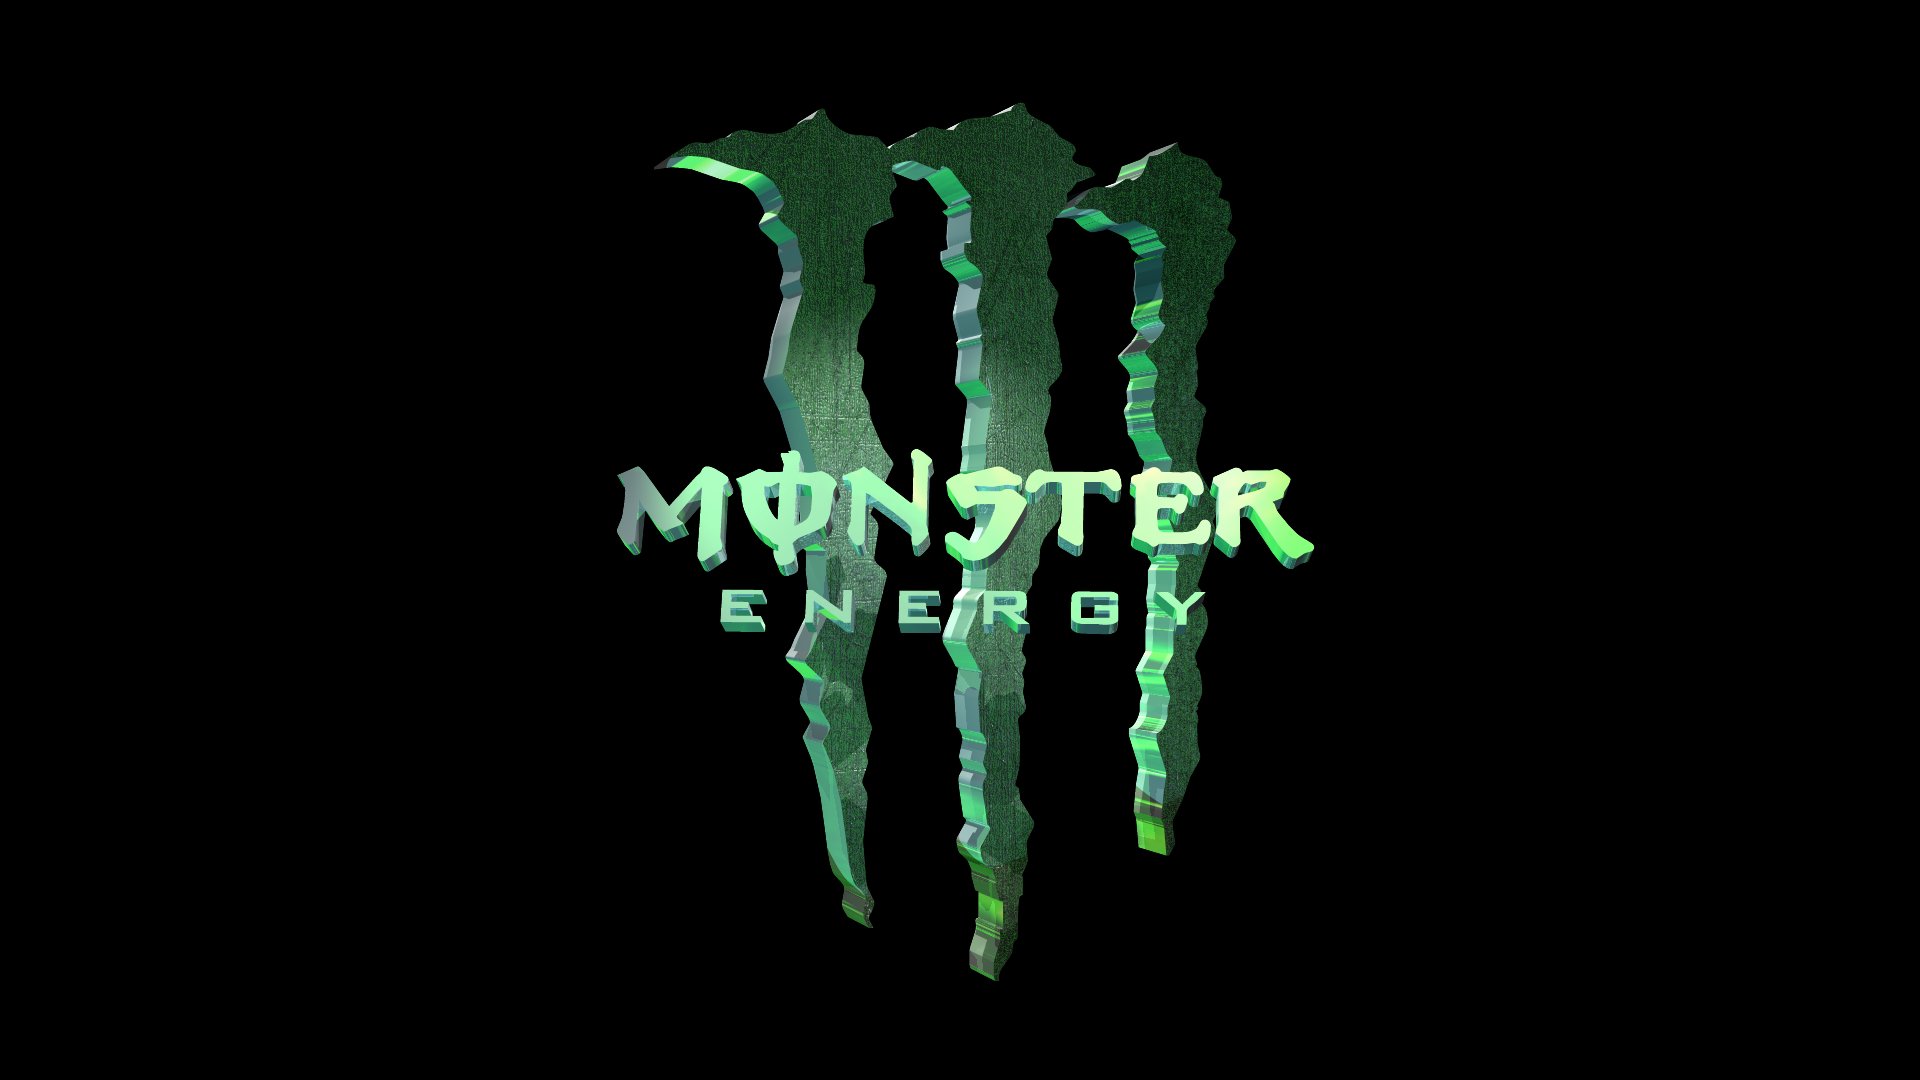 3D Monster Energy   MONSTER ENERGY DRINK Wallpaper 23885321